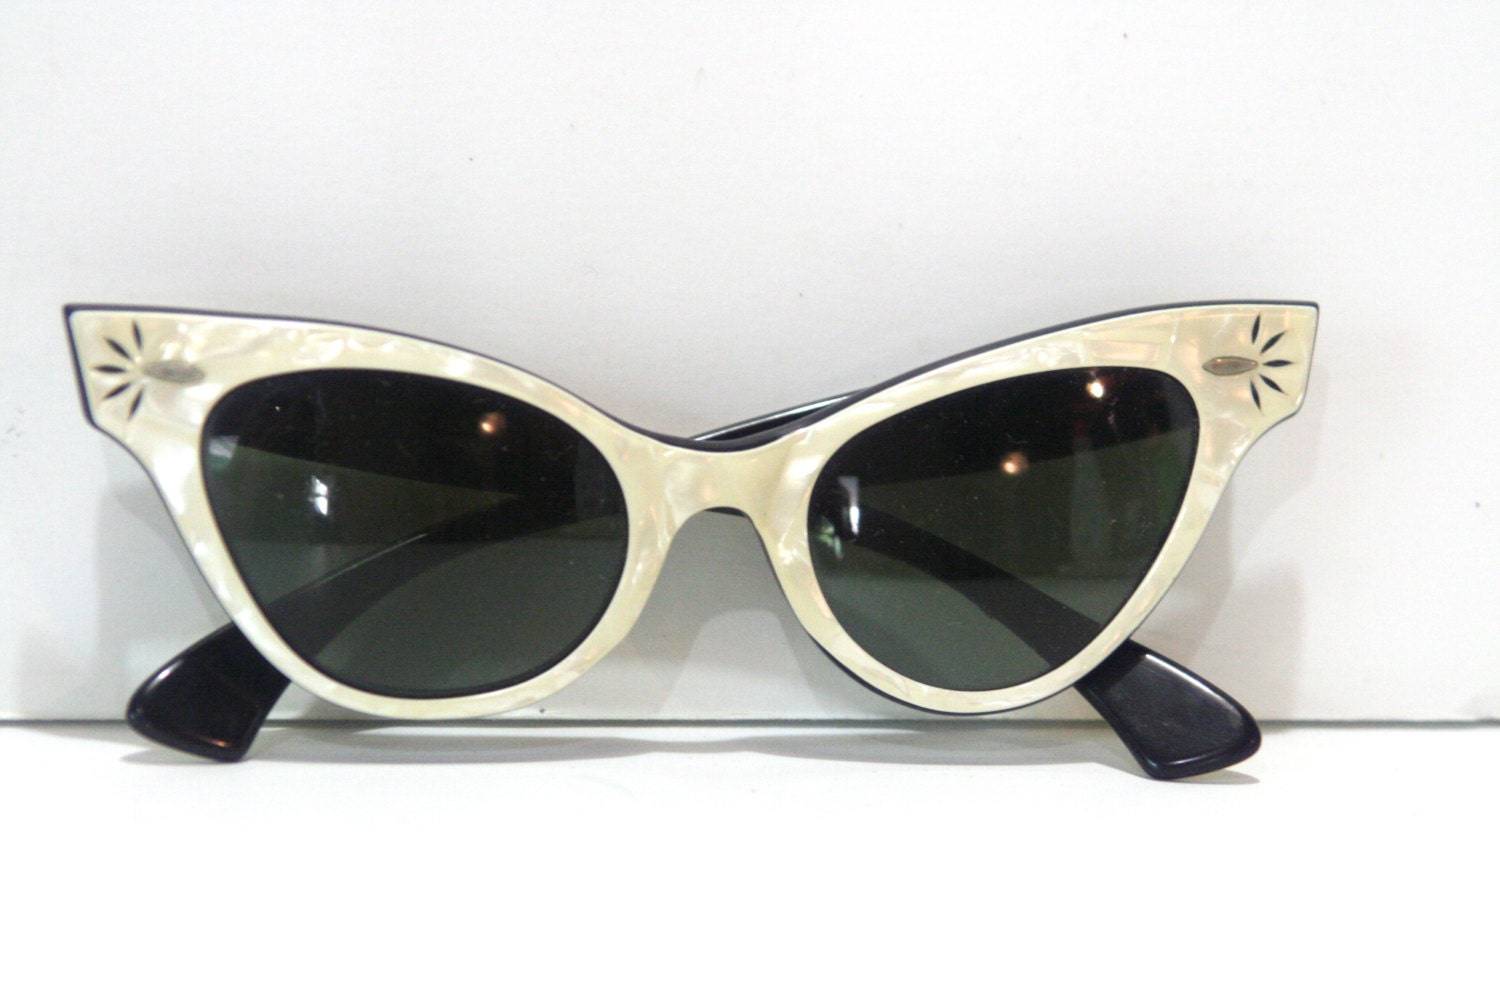 Vintage Ray Ban Sunglasses 1960s Heritage Malta